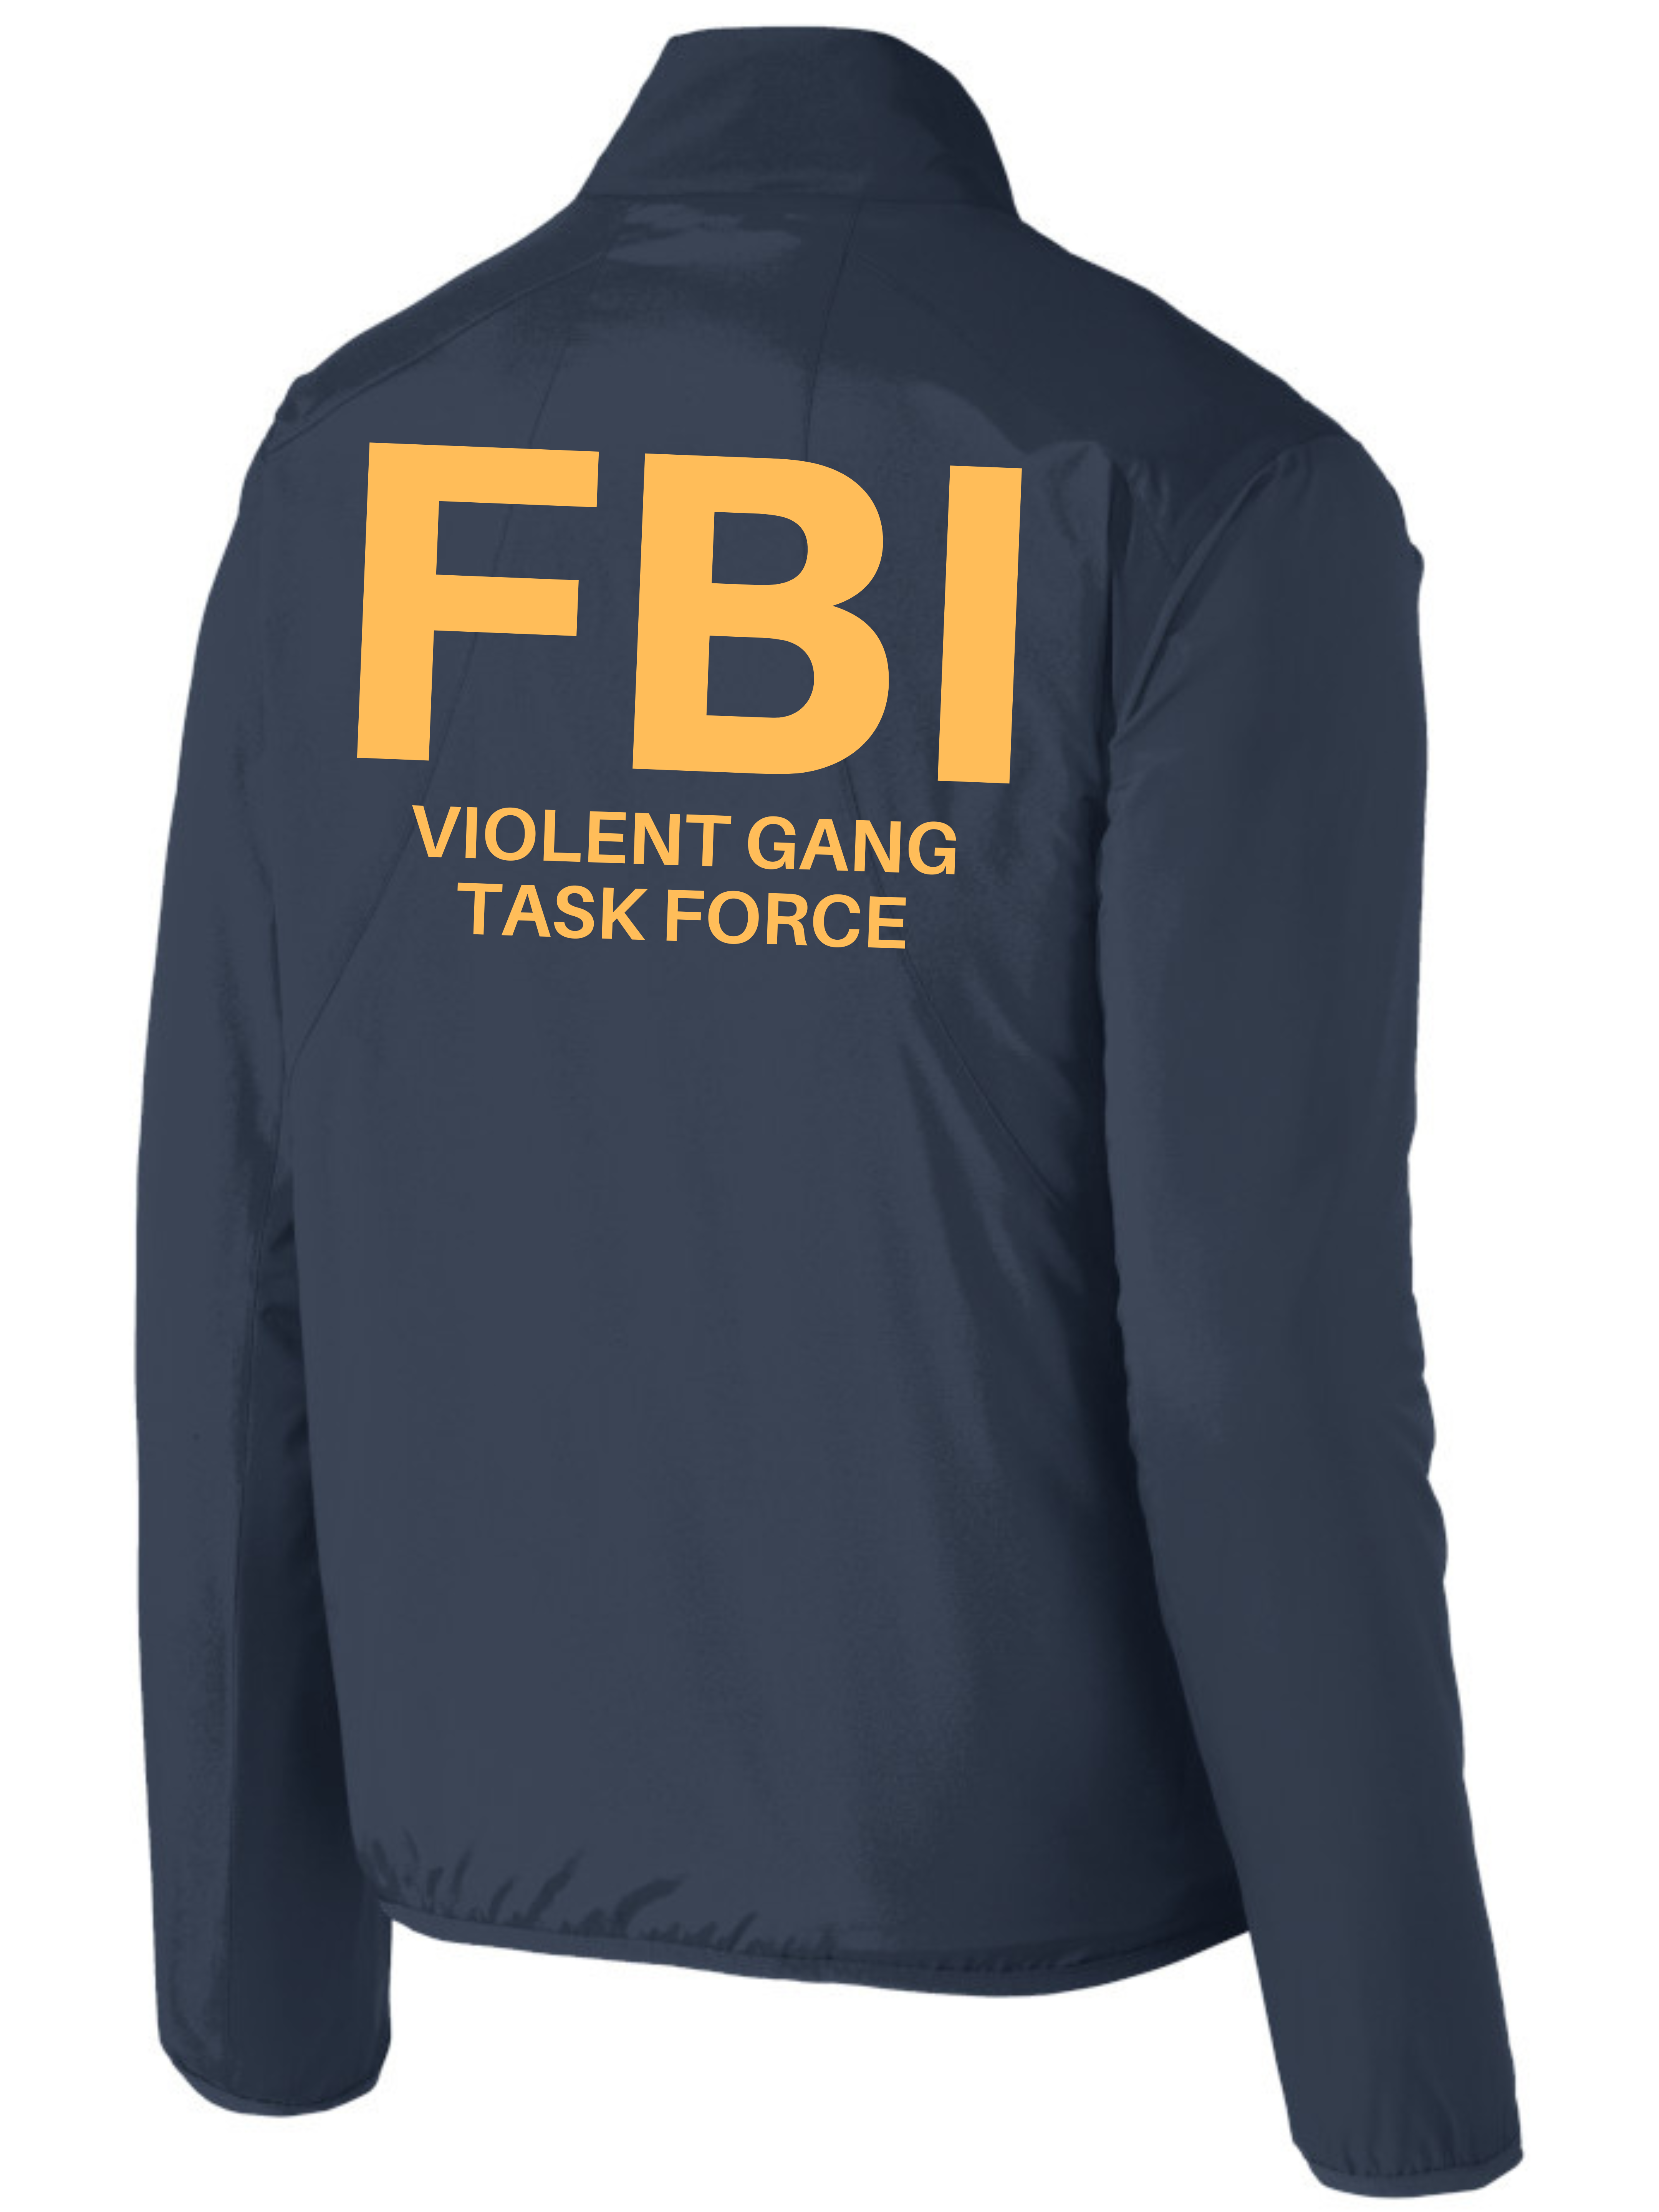 Feds Apparel FBI Violent Gang Task Force Agency Identifier T Shirt - Long Sleeve 2XL +$2.00 / Men